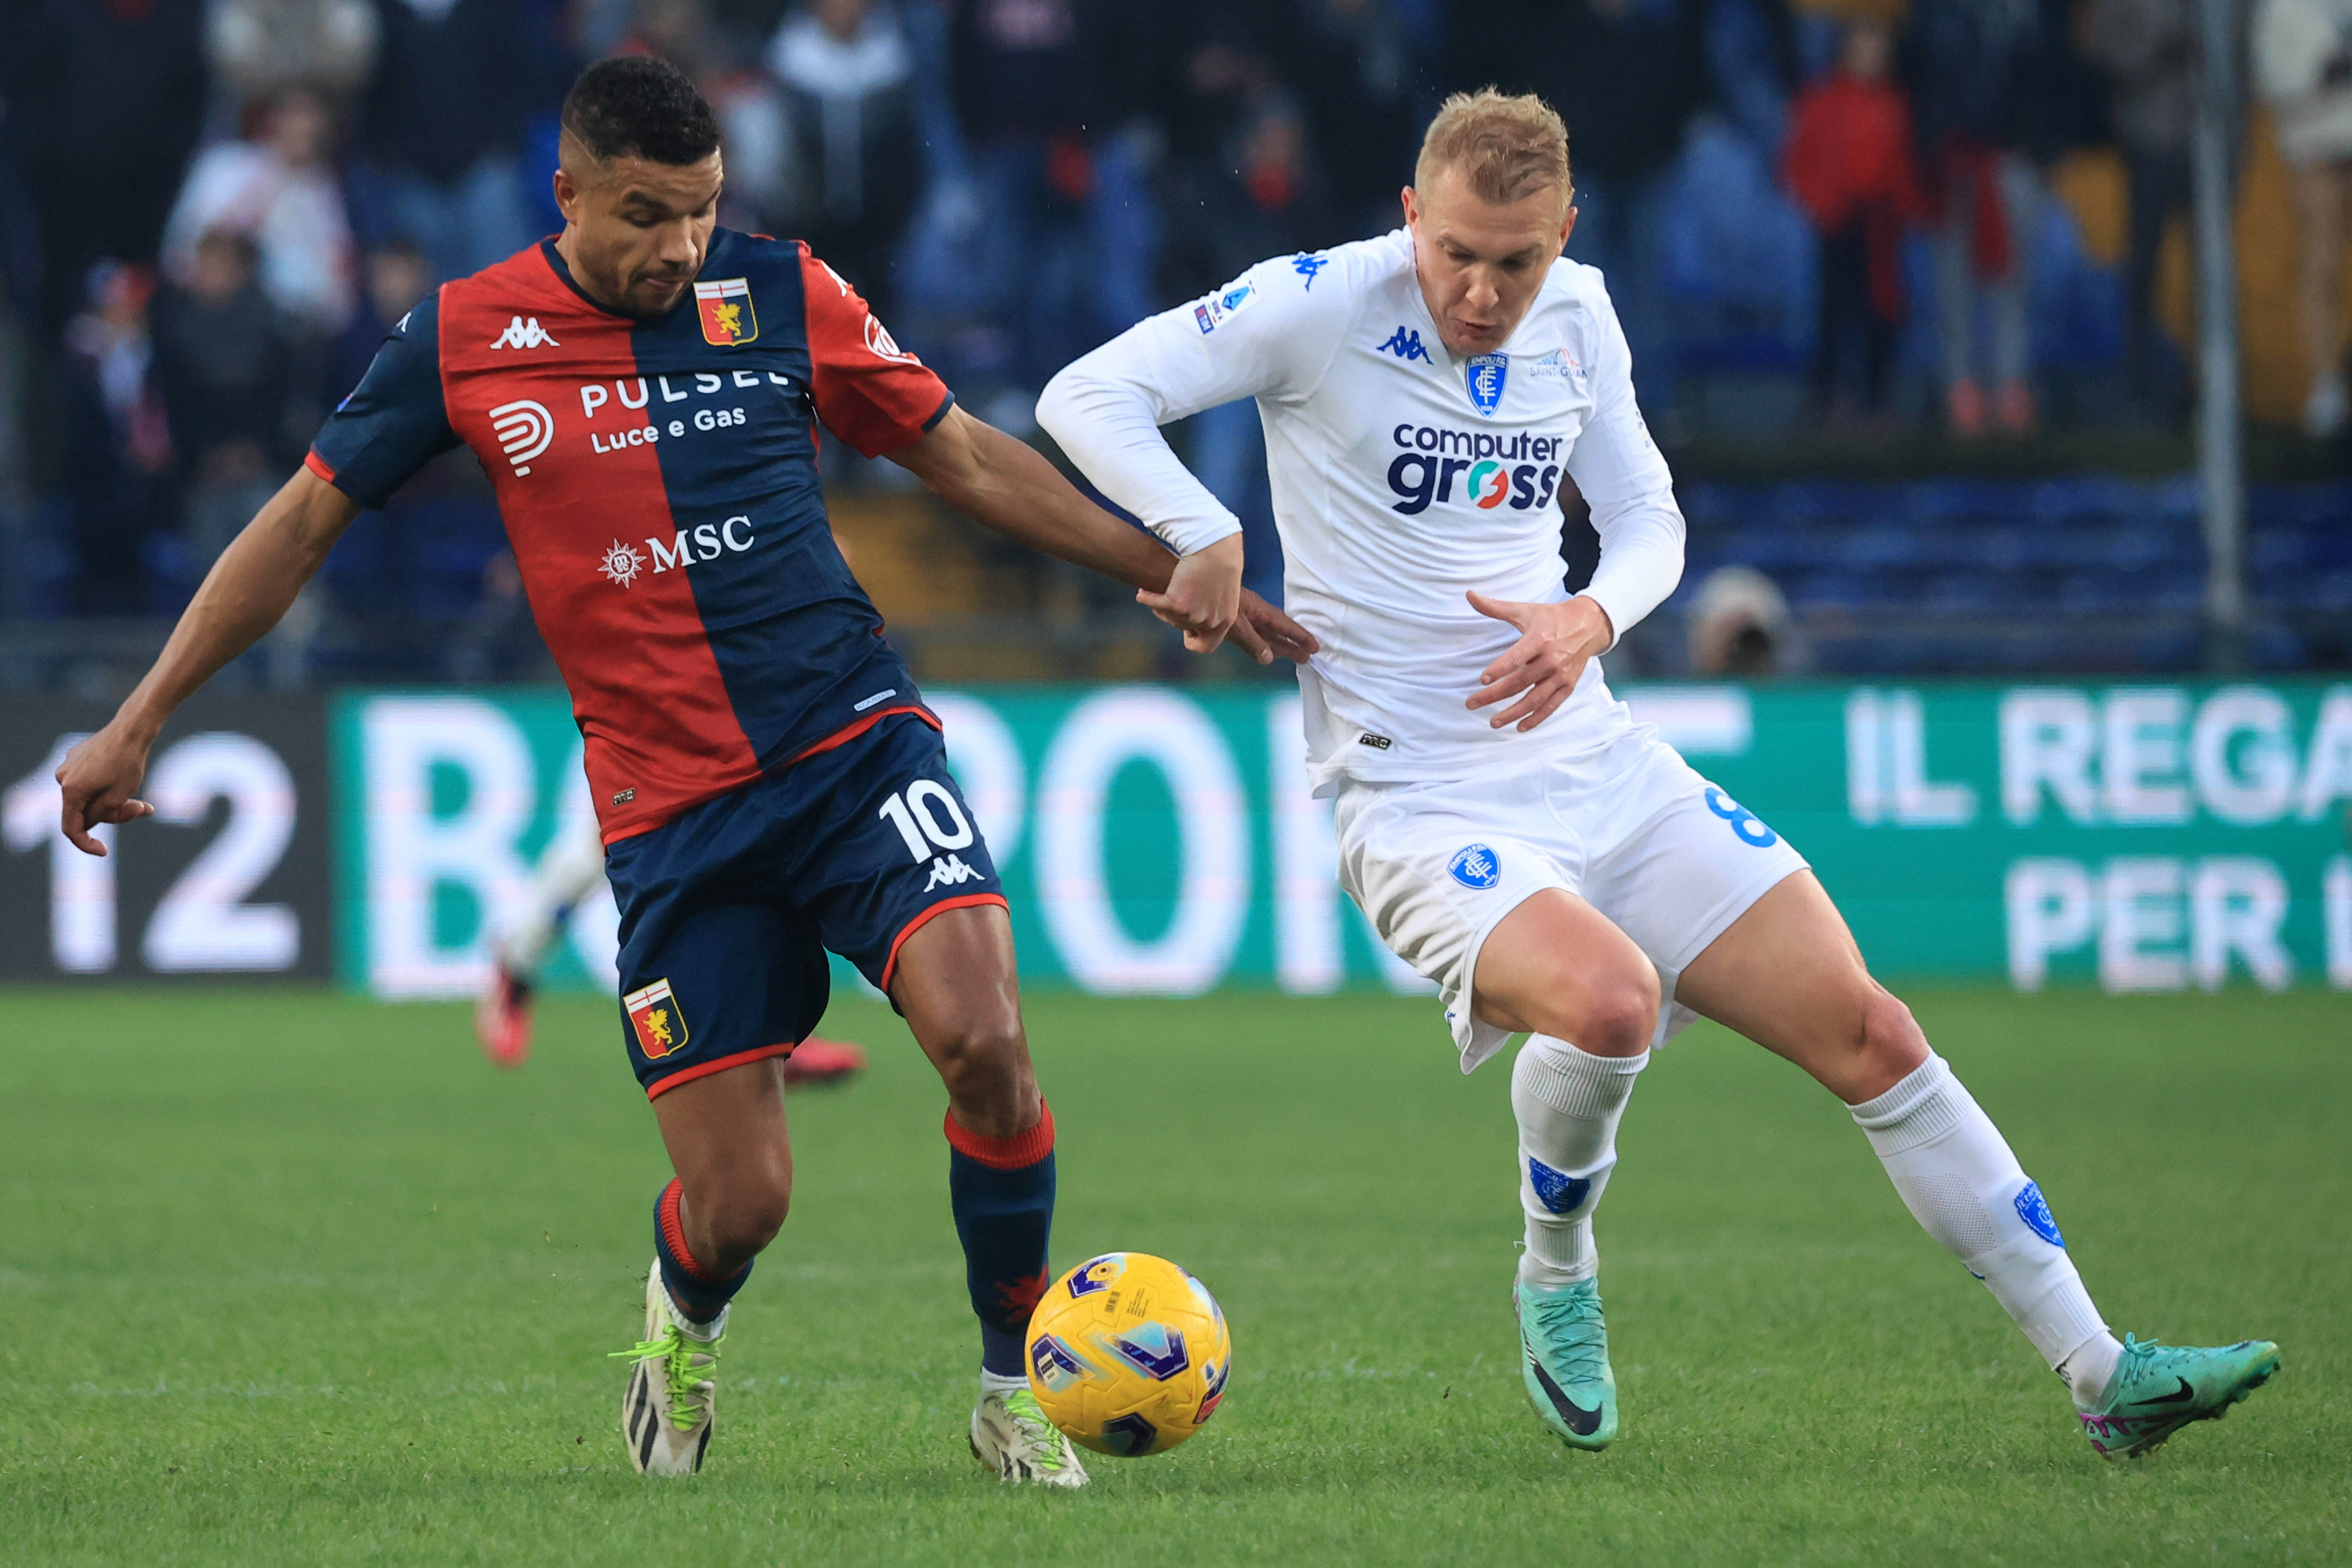 Genoa - Empoli: Malinovskyi Starts, Kovalenko on the Bench